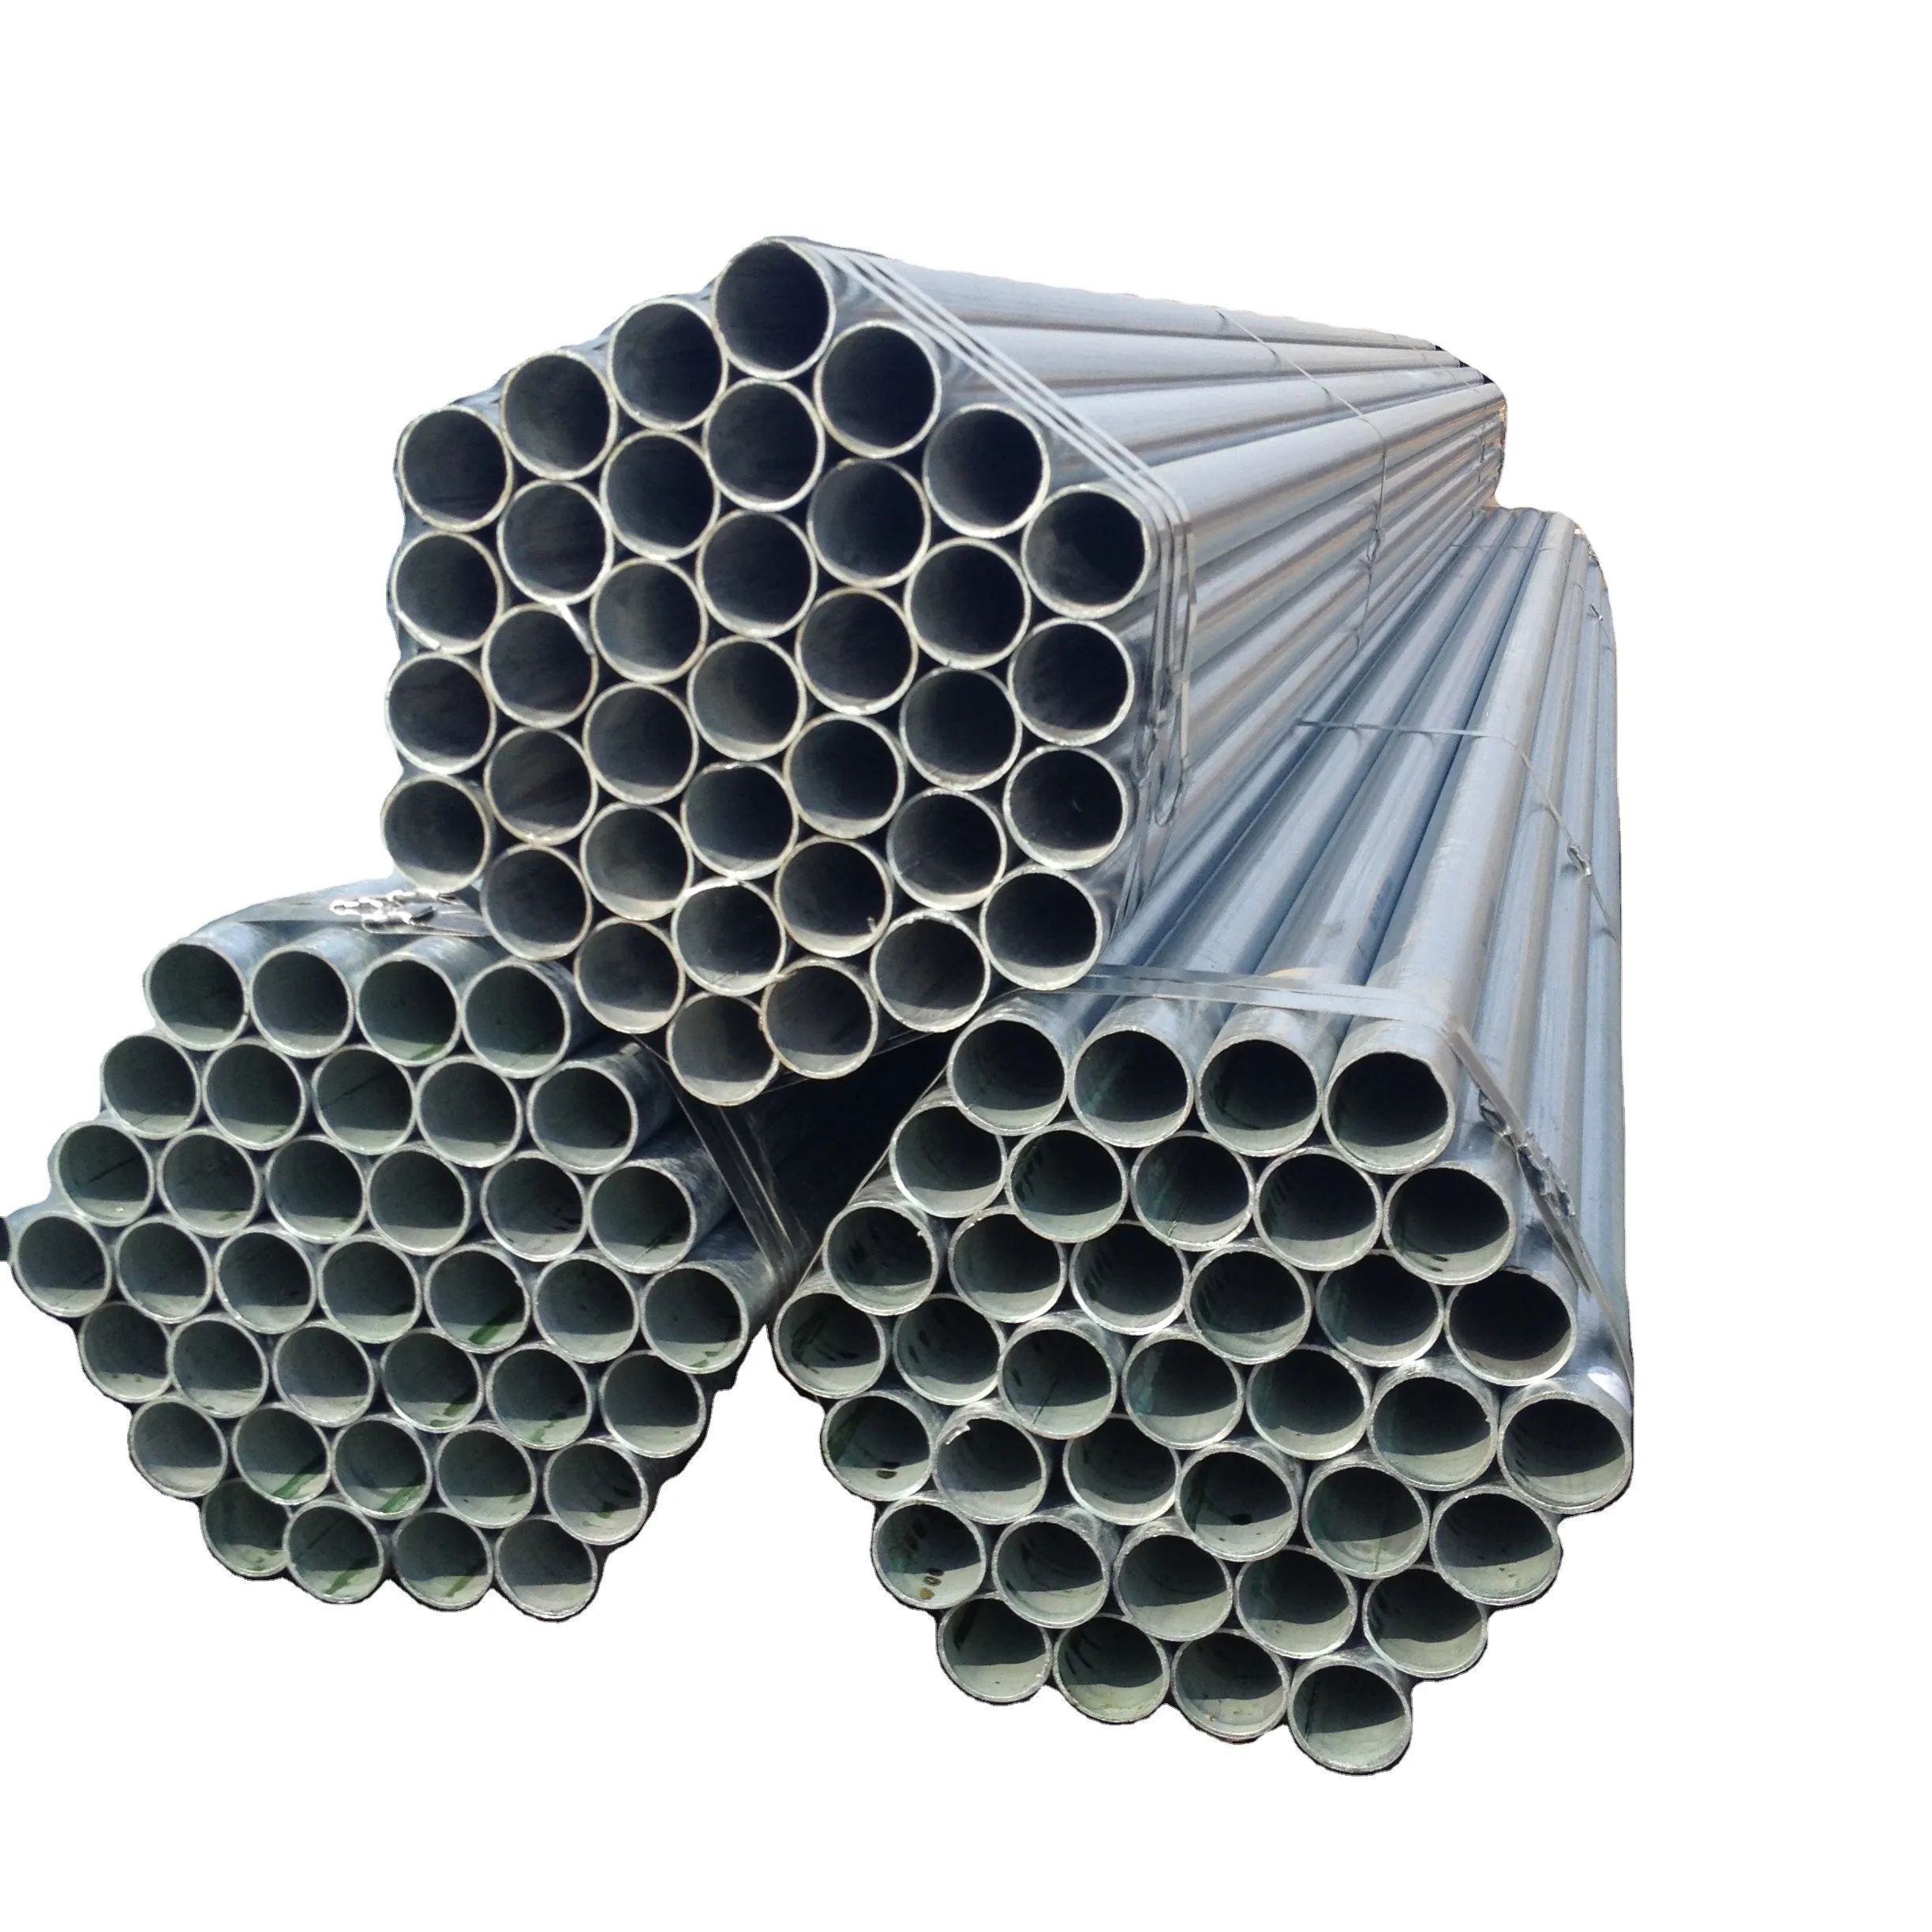 マイルドカーボン低炭素4インチerwカーボン溶融亜鉛めっき丸鋼管